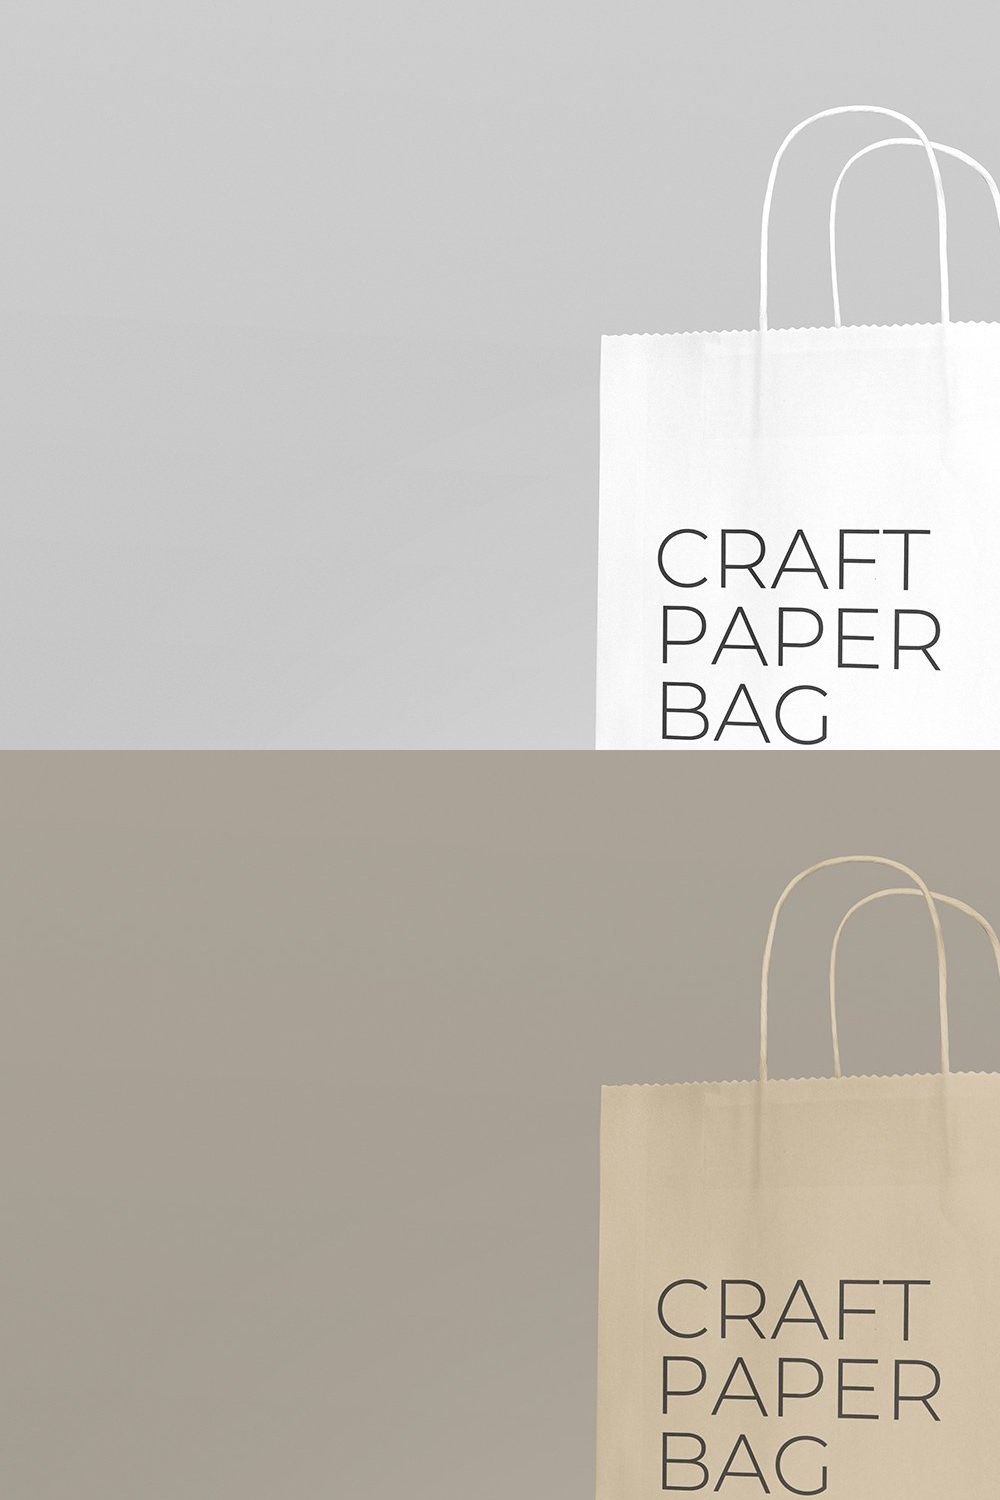 Craft Paper Bag Mockup pinterest preview image.